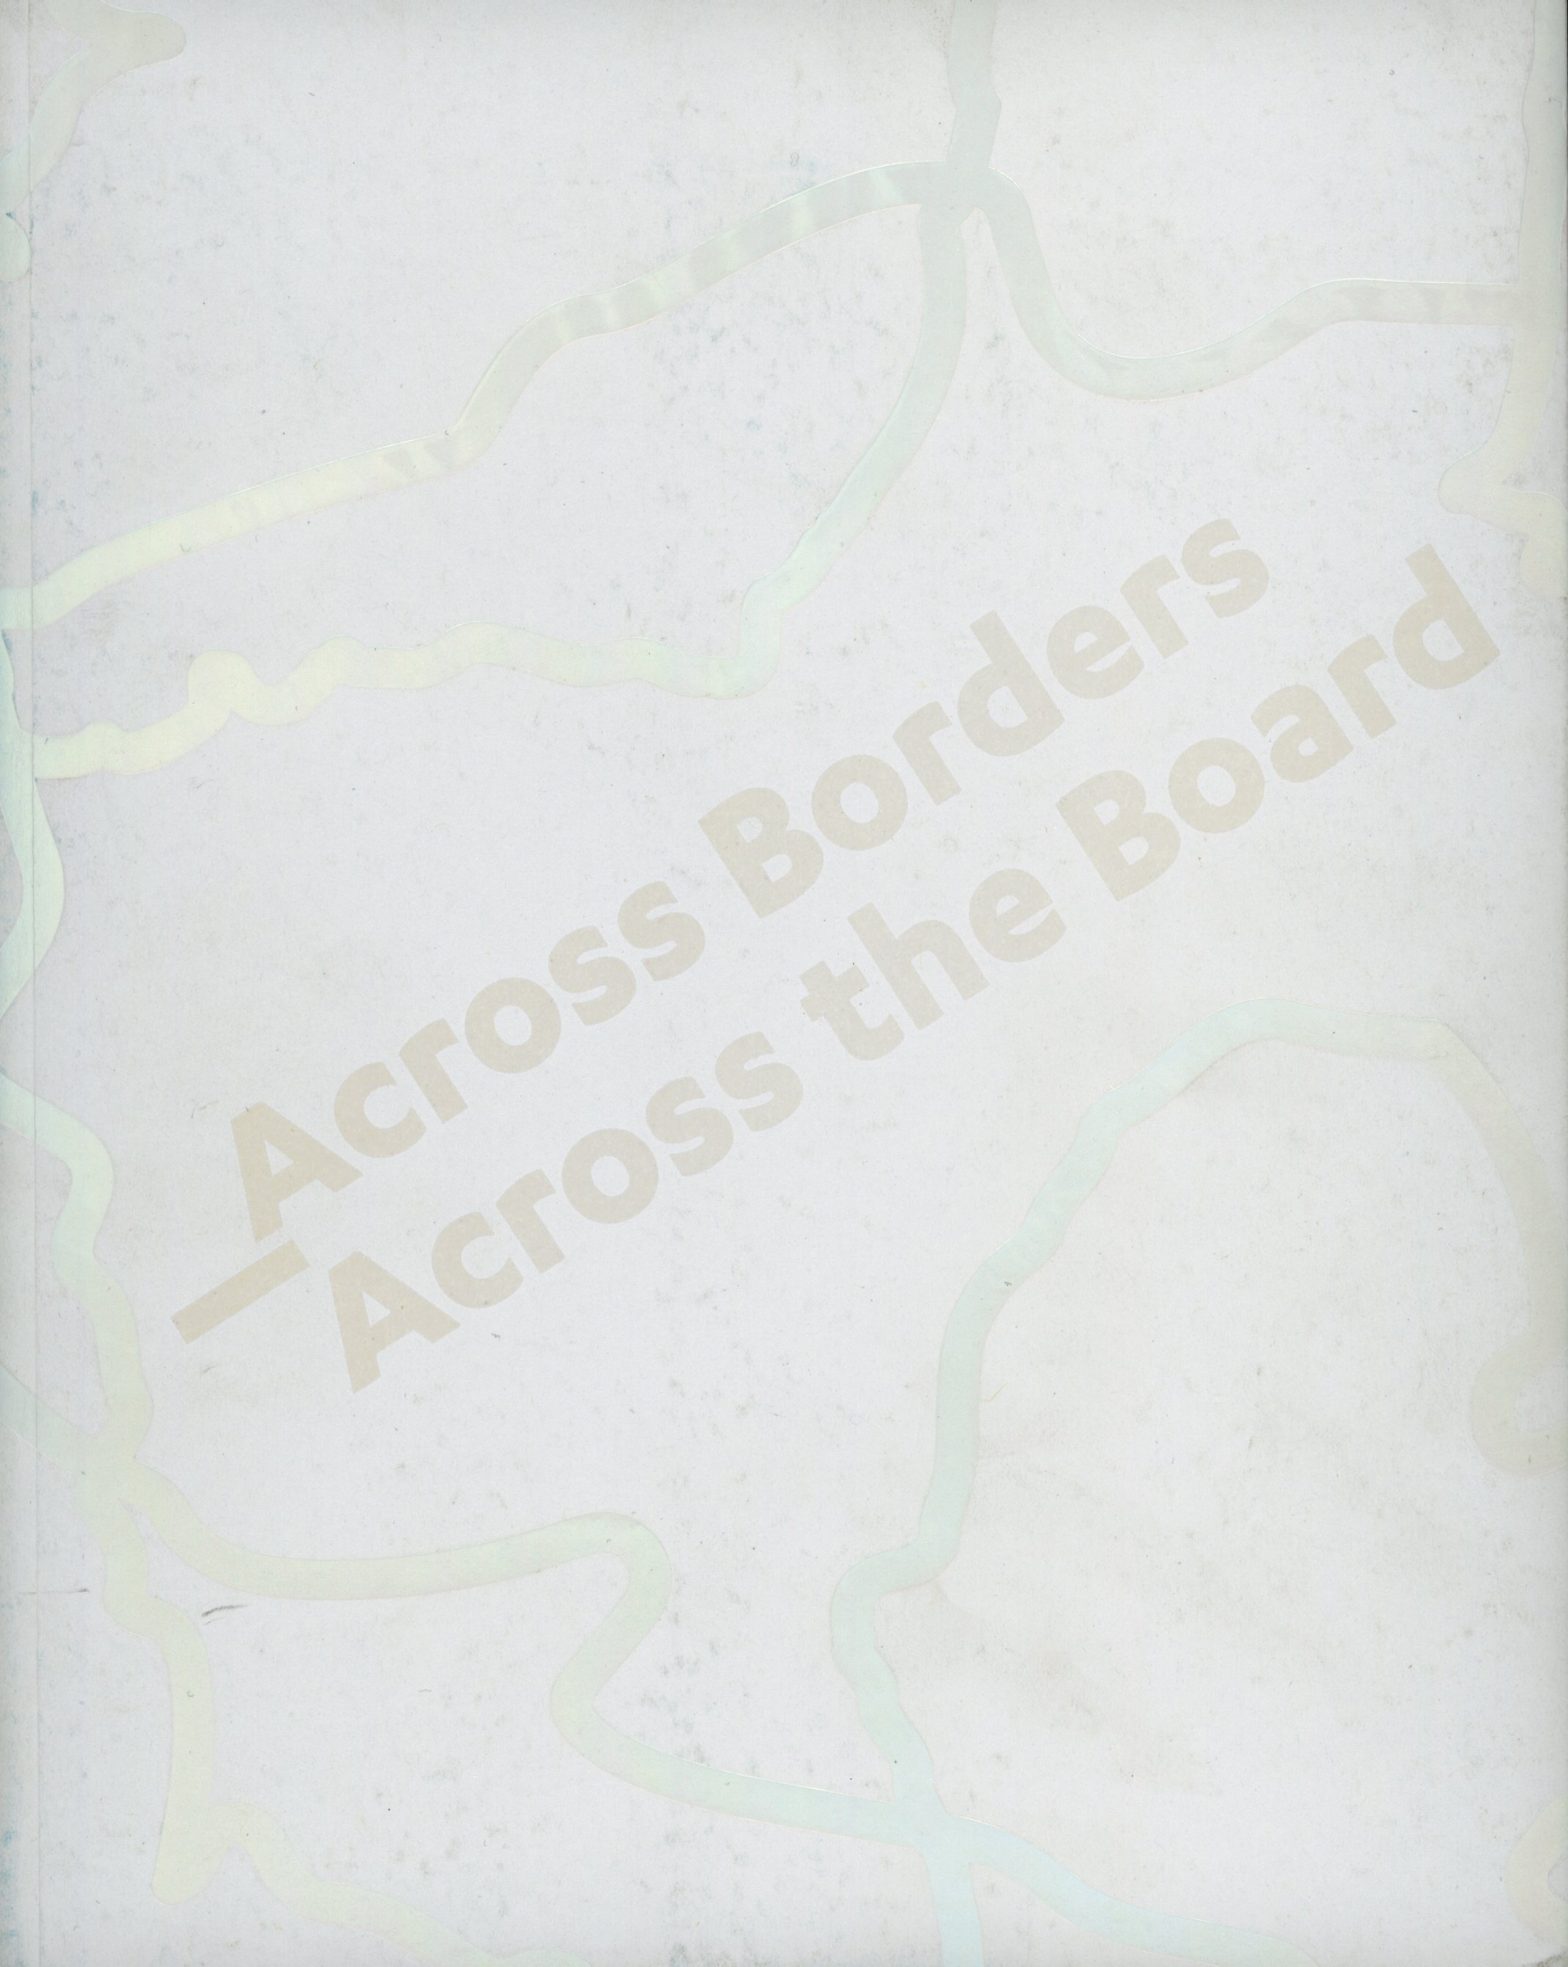 Across Borders - Across the Board